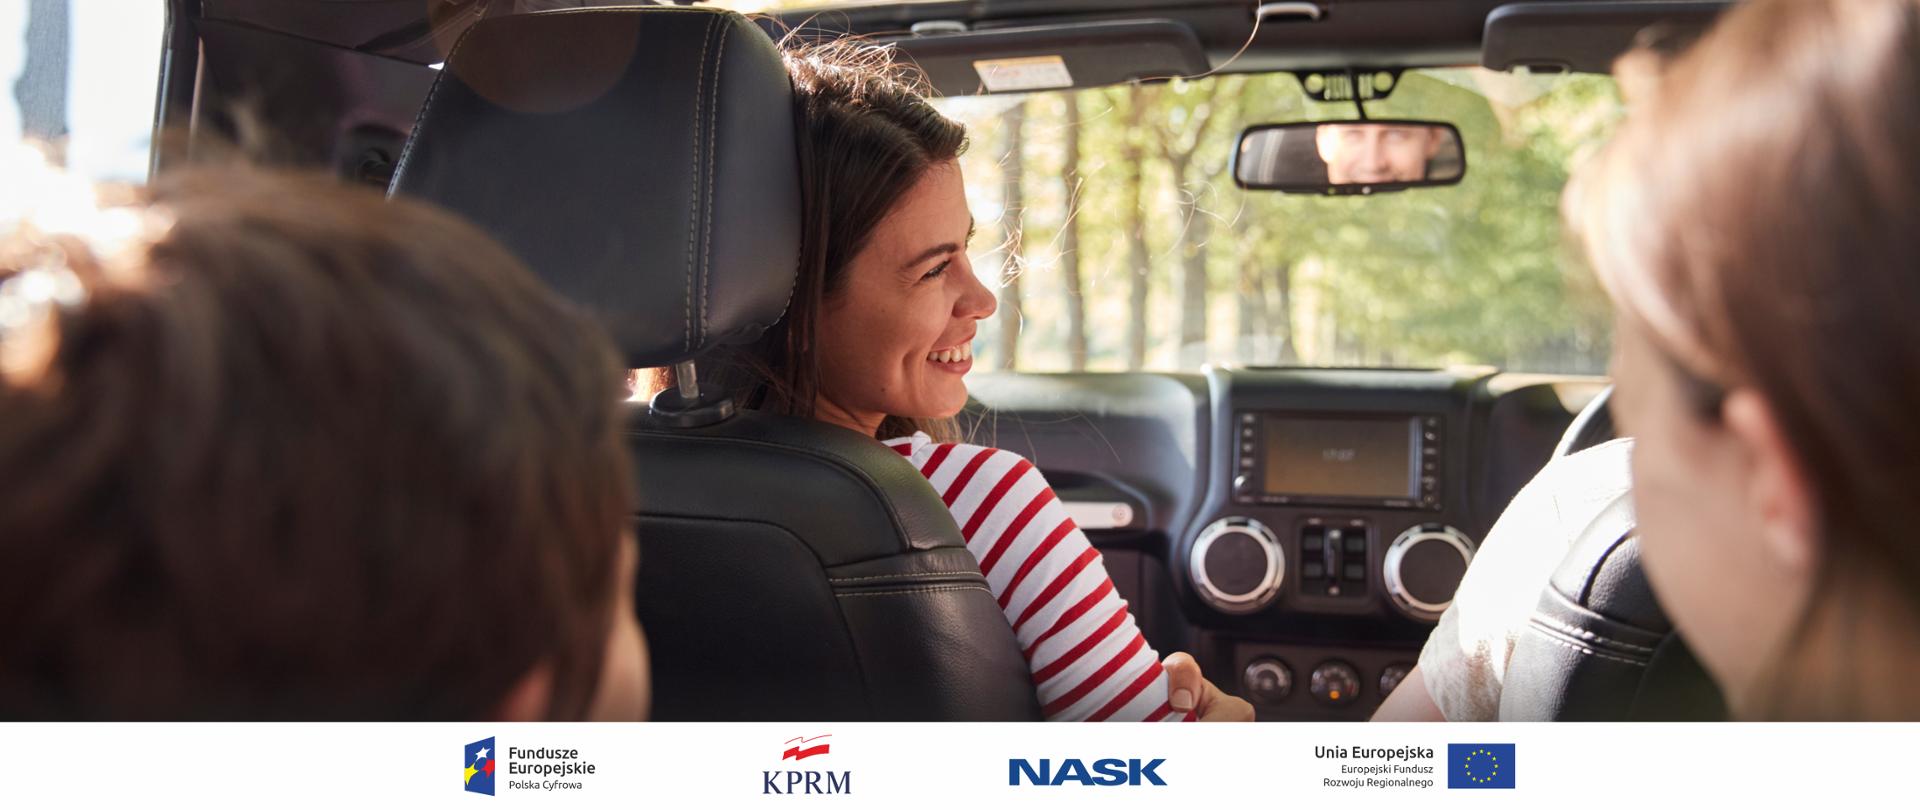 Zdjęcie wnętrza samochodu. Za kierownicą siedzi uśmiechnięta młoda kobieta. W przednim lusterku widać mężczyznę. Na tylnym siedzeniu widać głowy dzieci. 